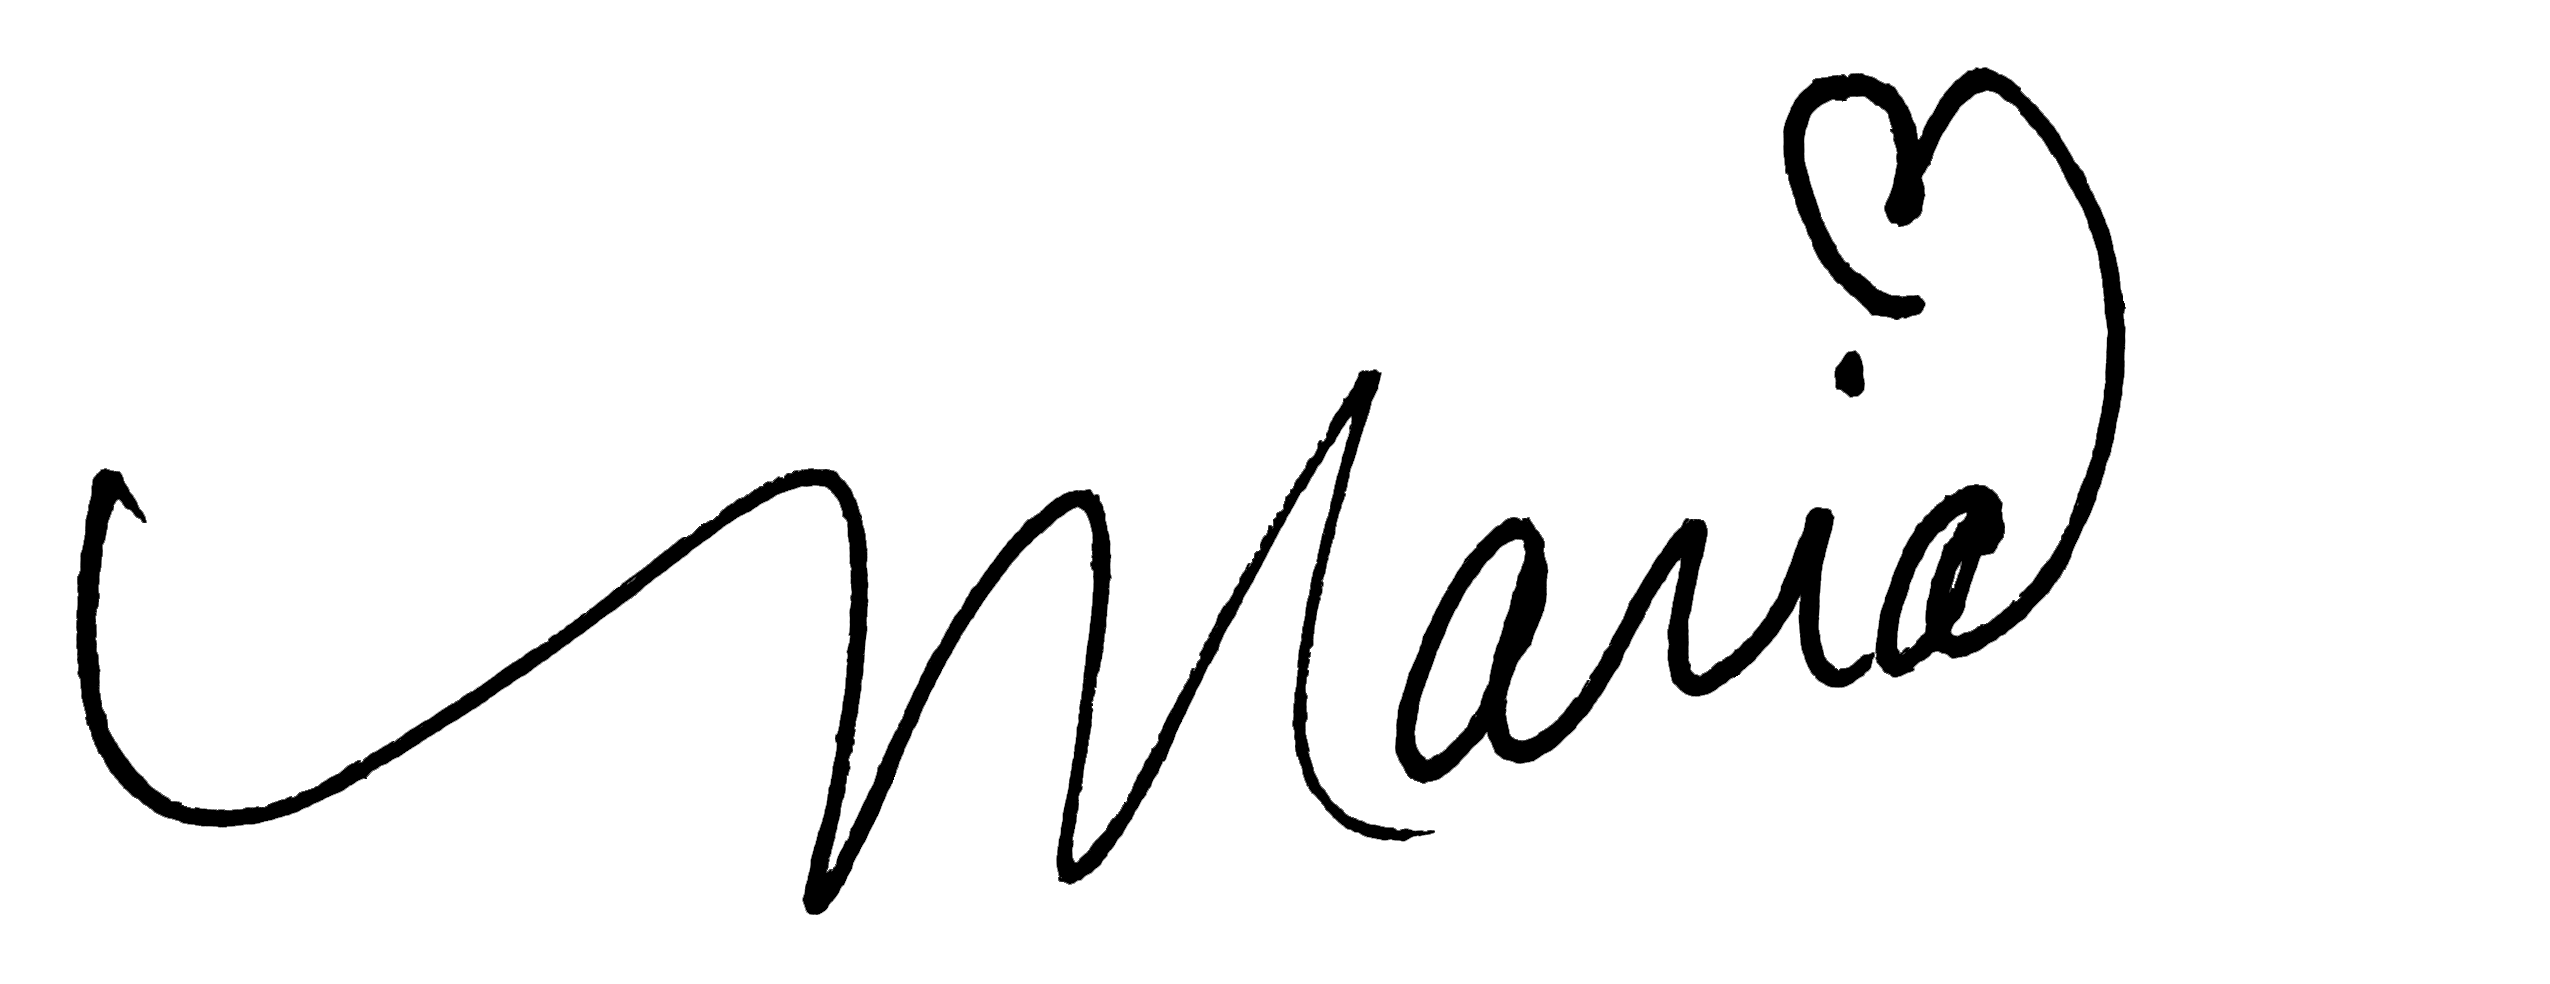 Maria signature for AirBnB host